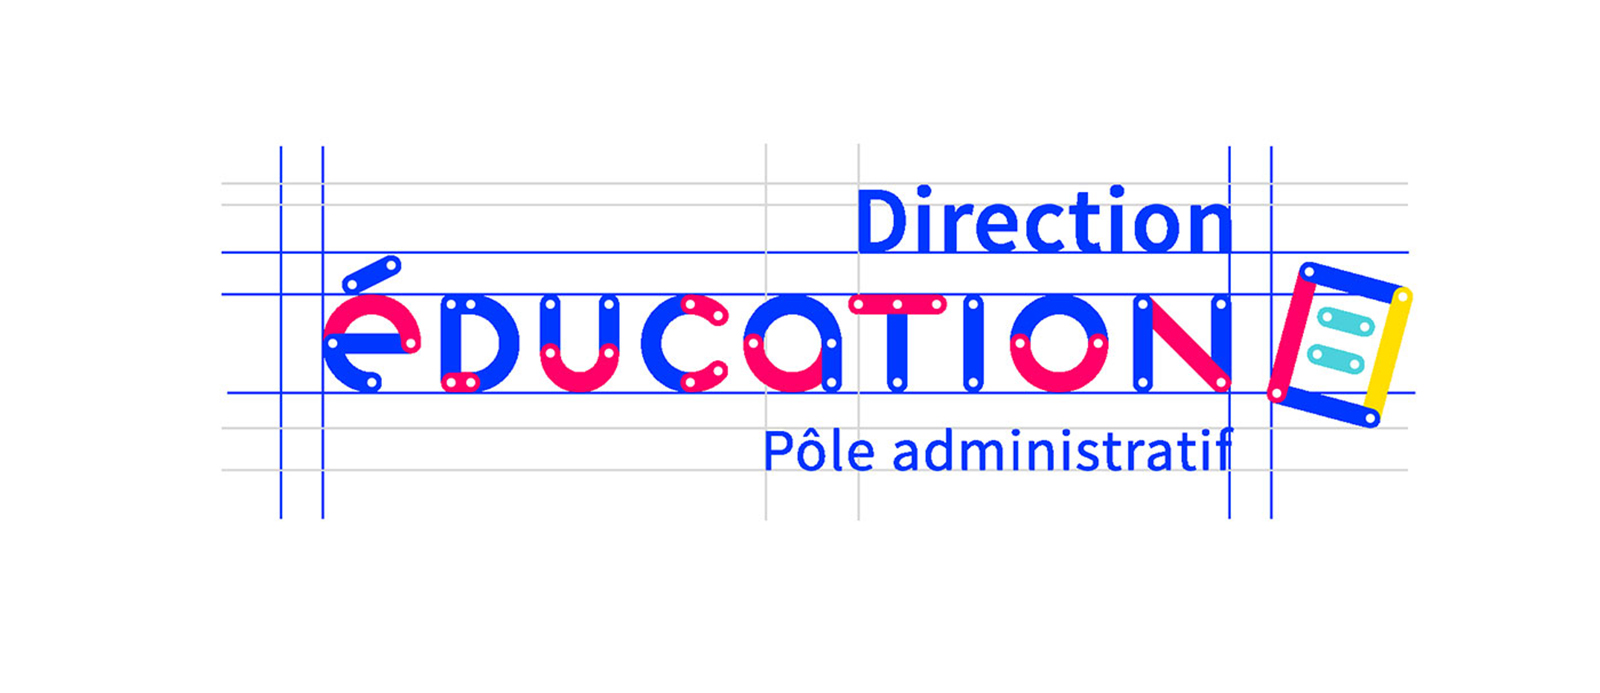 Direction Education 教育机构品牌VI设计欣赏-深圳VI设计5